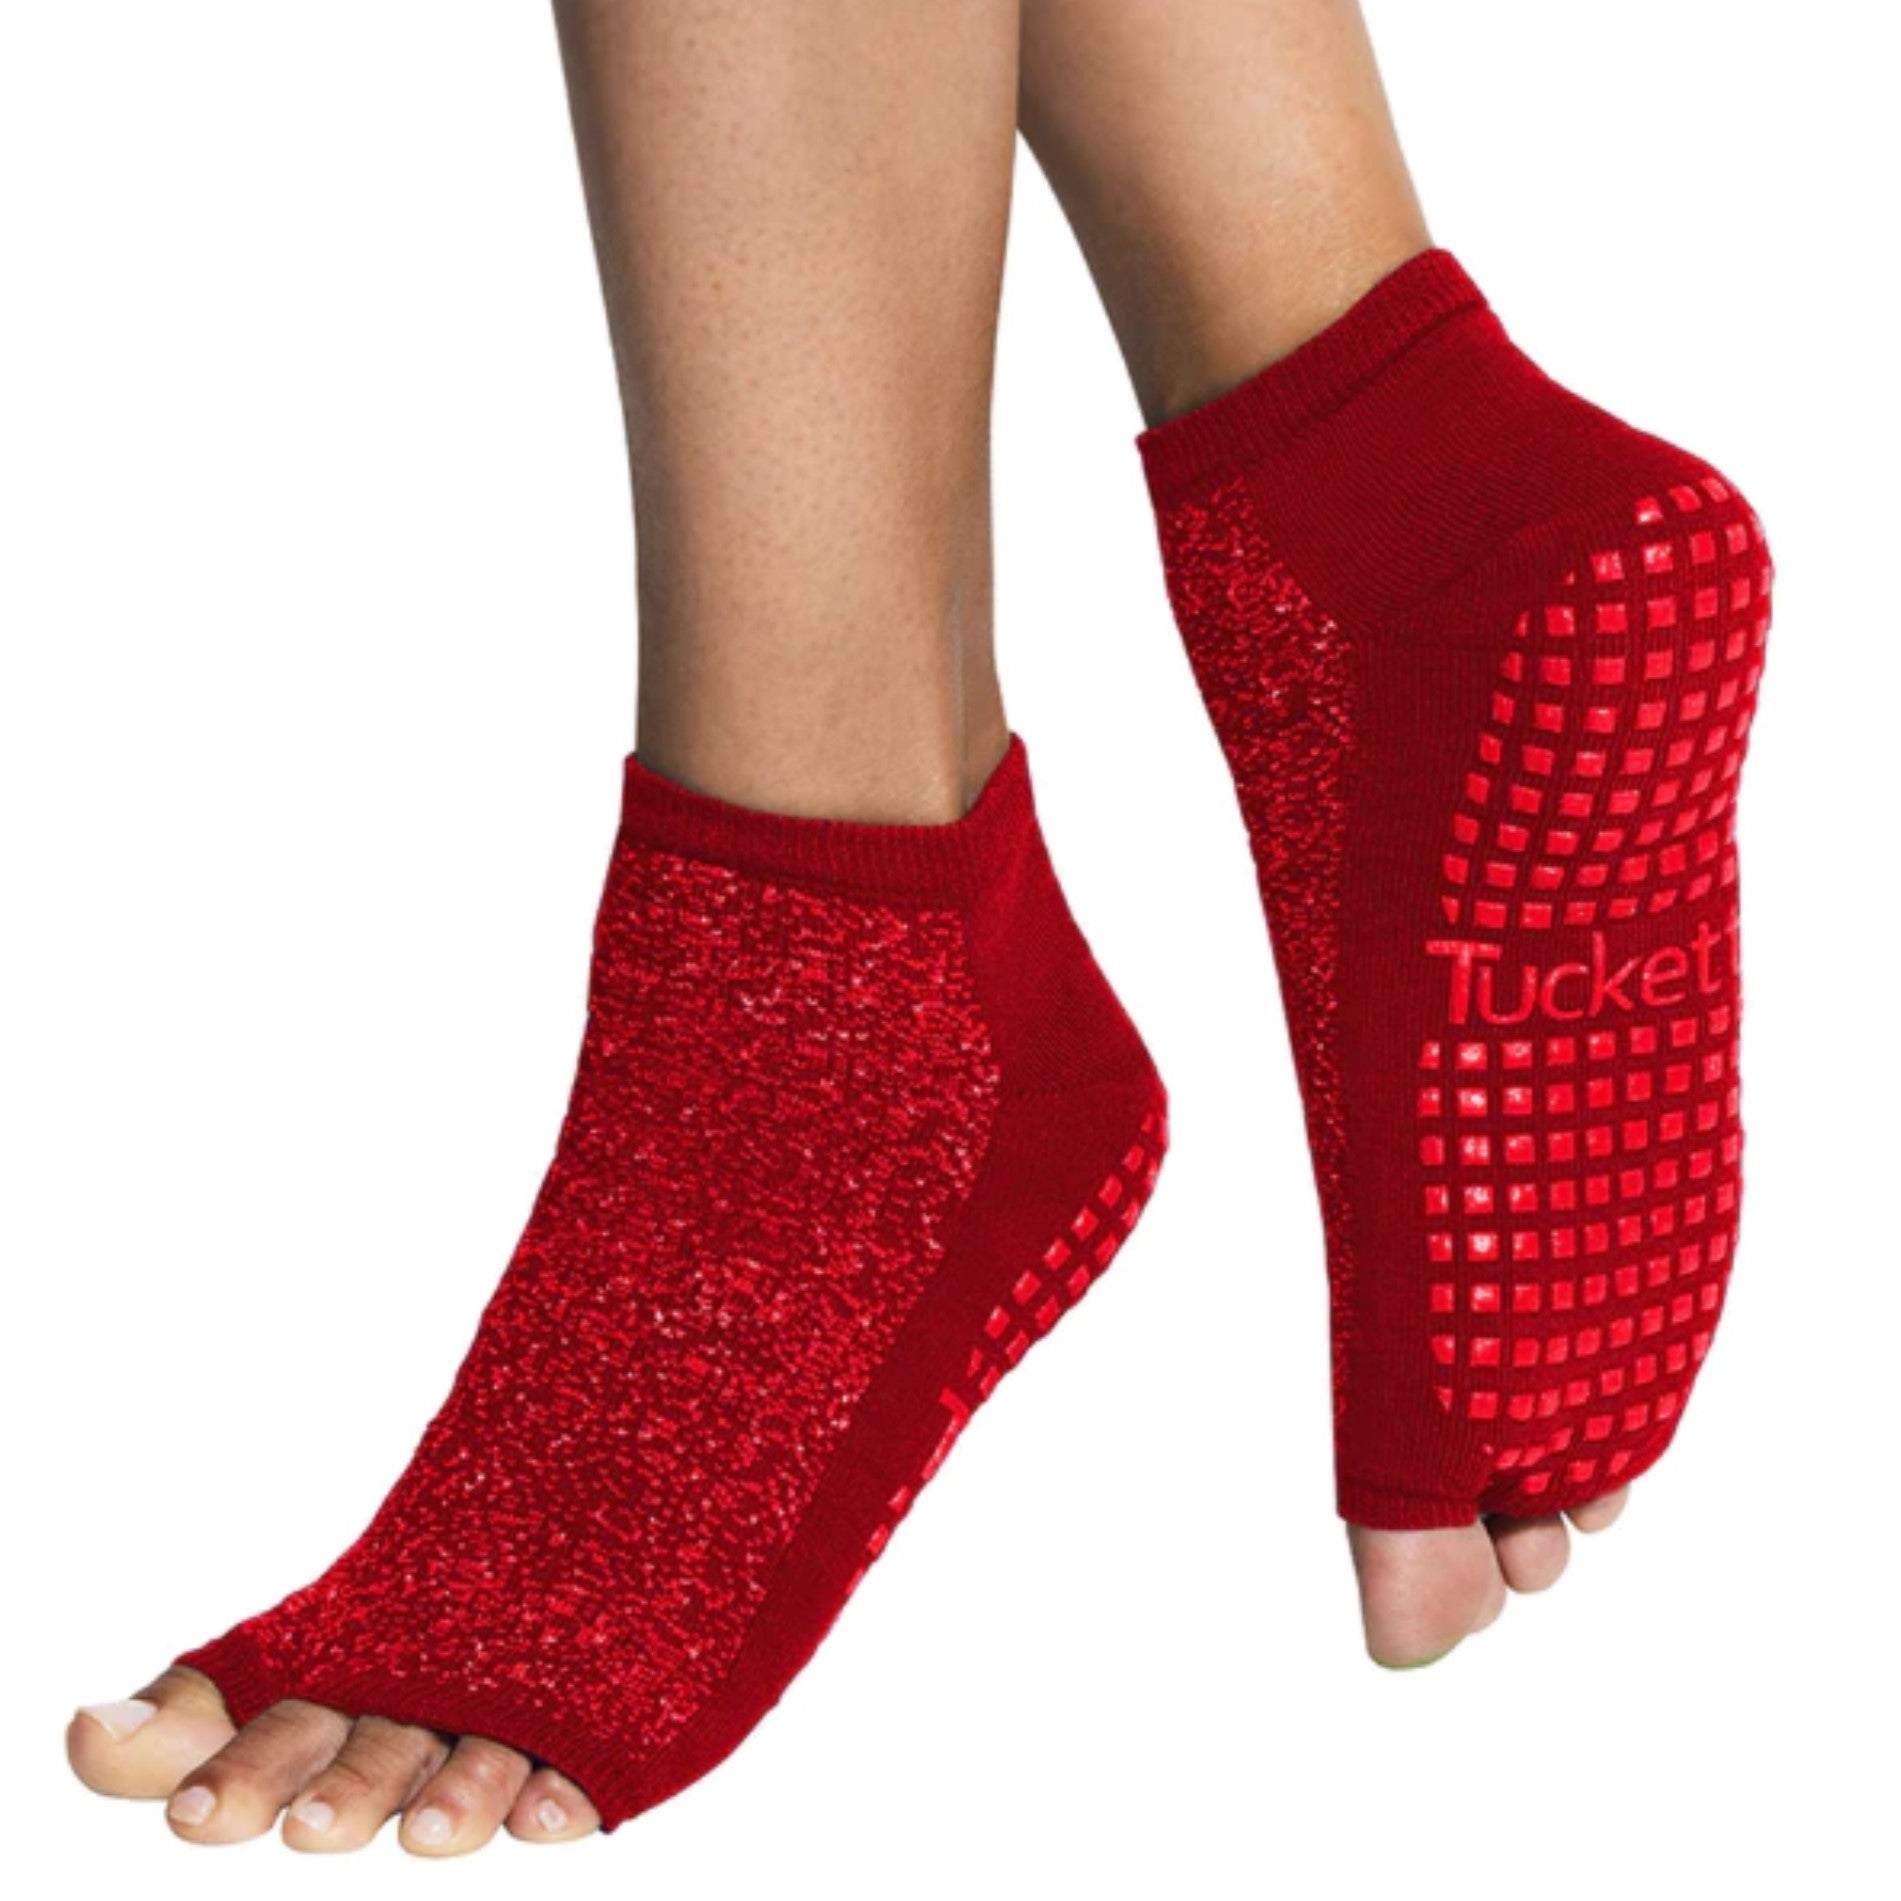 Anklet Grip Sock (Barre / Pilates)